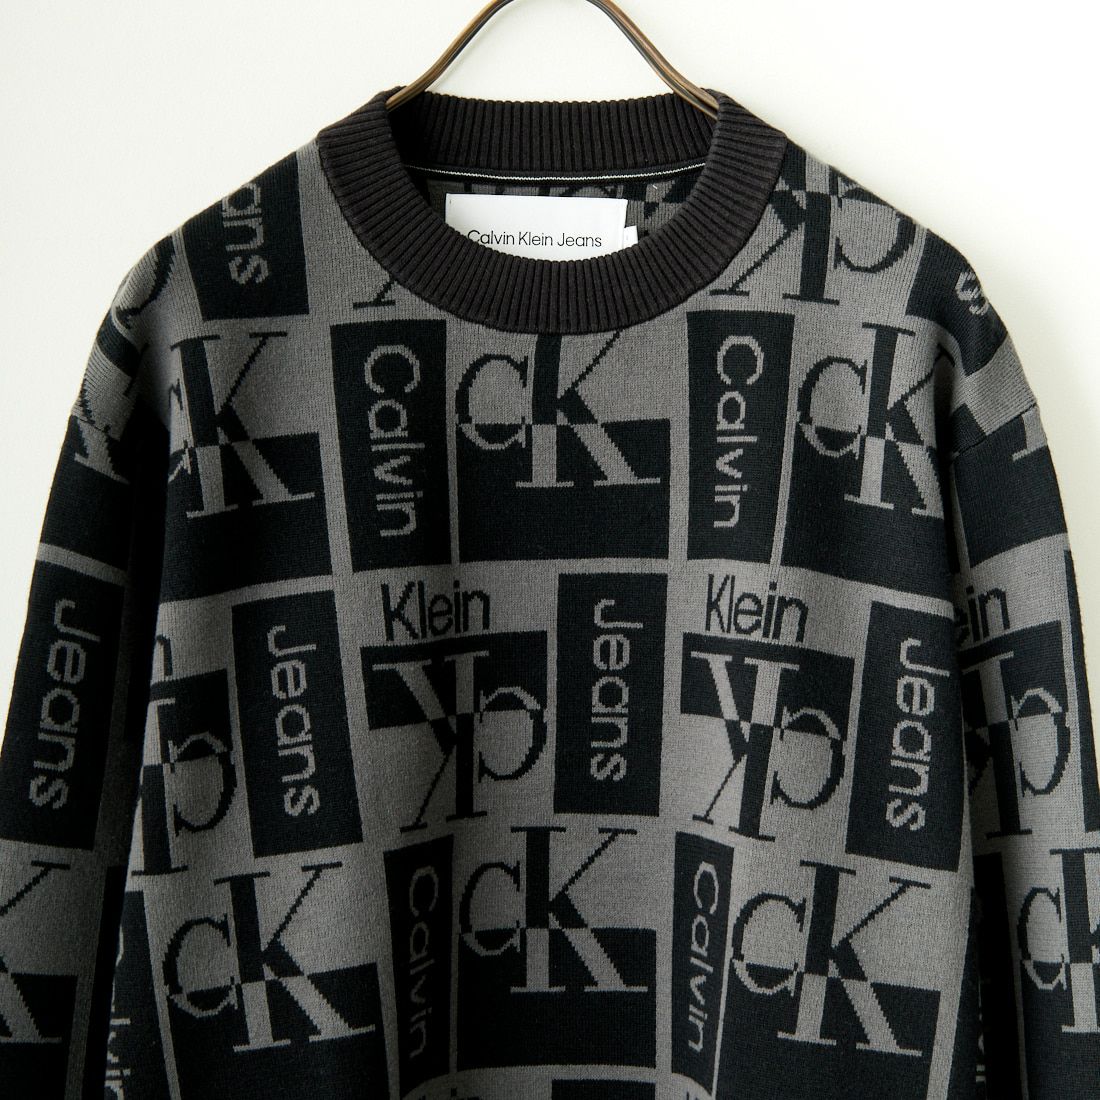 Calvin Klein Jeans [カルバンクライン ジーンズ] オールオーバーロゴ